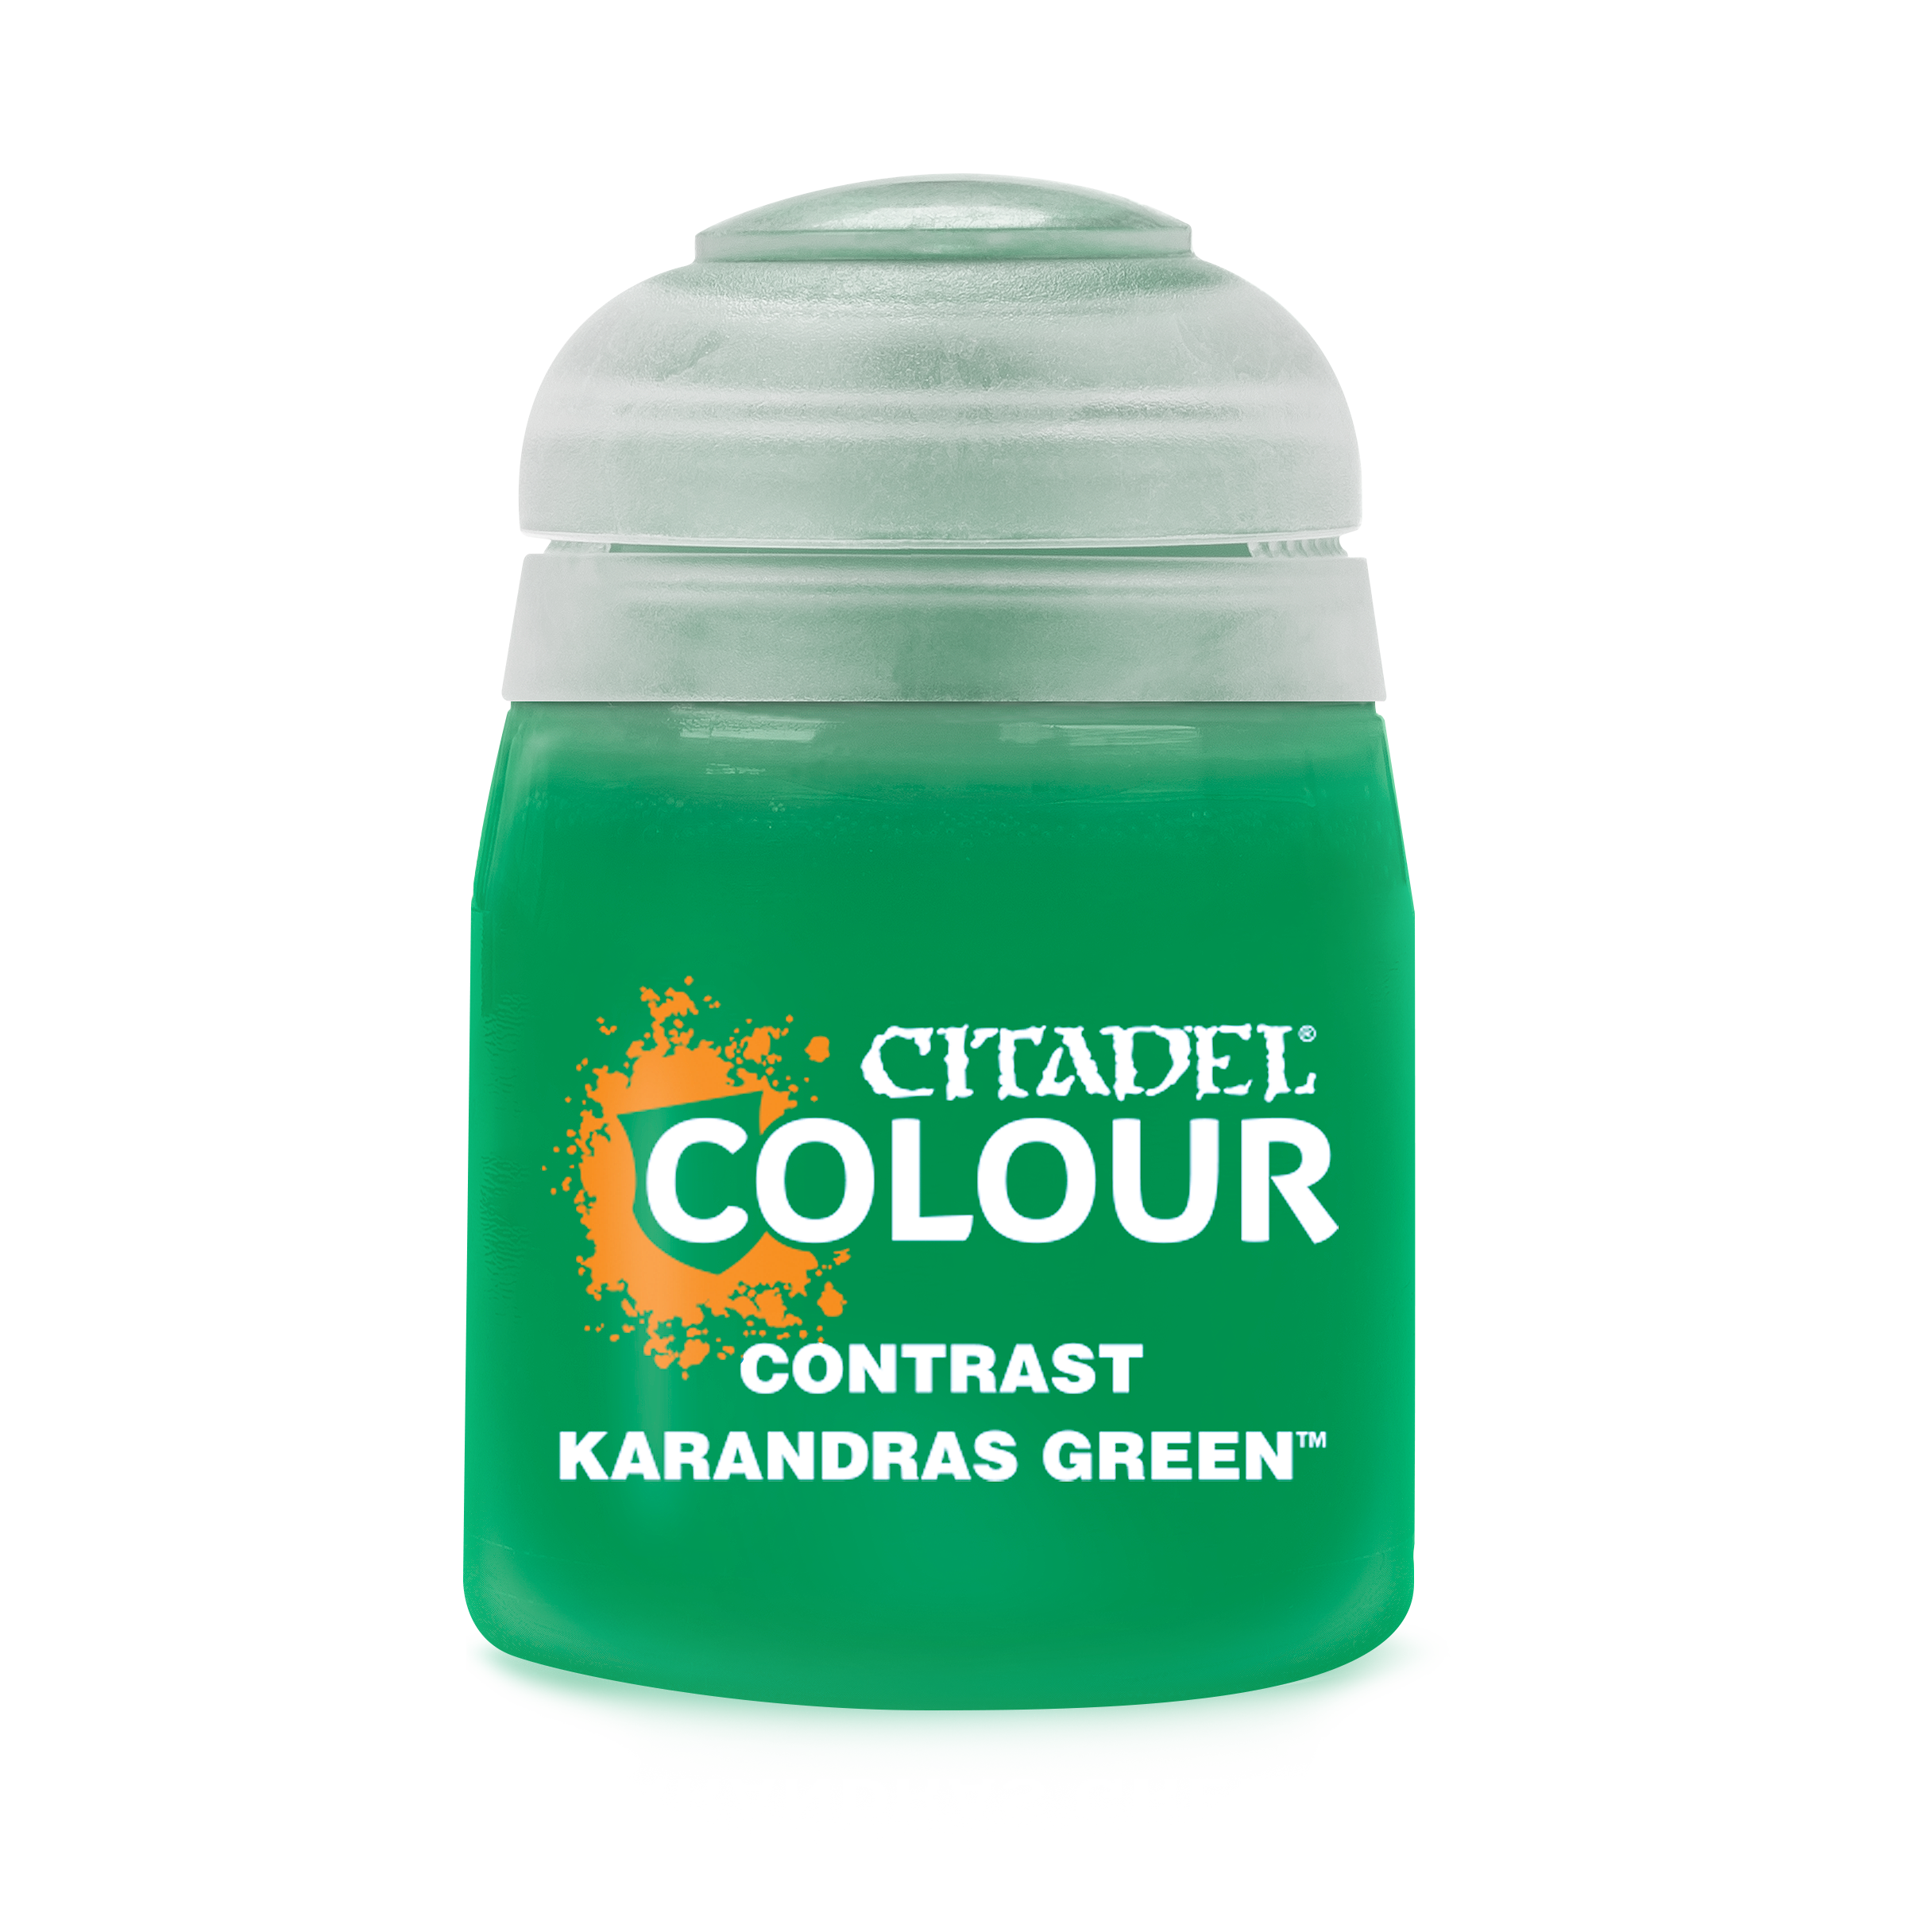 karandras green pot